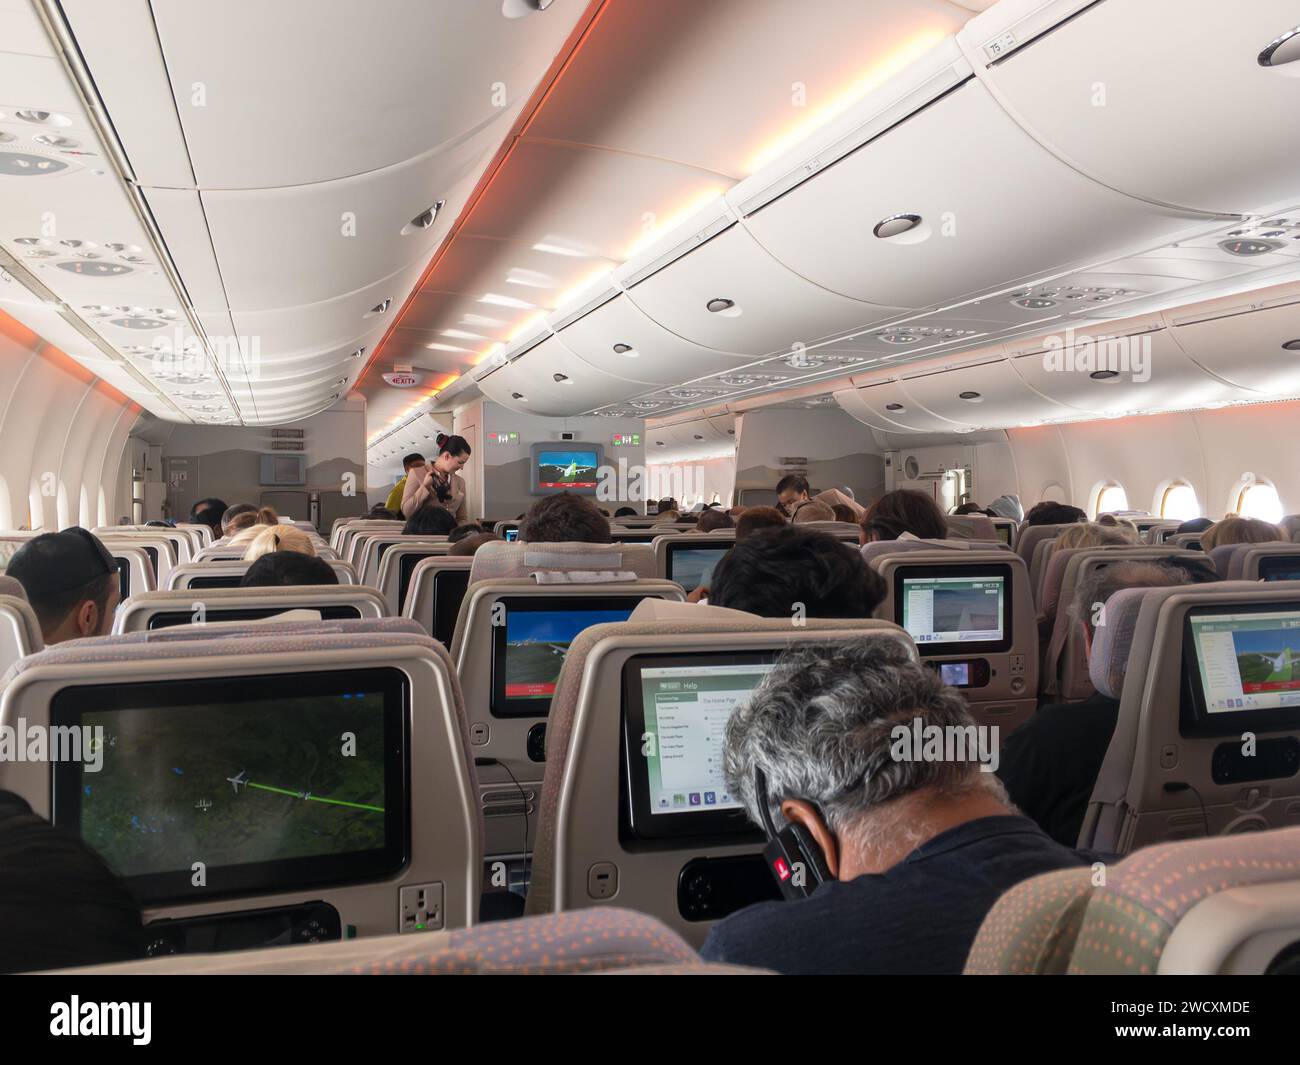 PERTH, AUSTRALIEN - 17. JULI 2018: Innenraum von Emirates Airlines Flugzeugen auf Langstreckenflügen, Stewardess liefert Kopfhörer Stockfoto